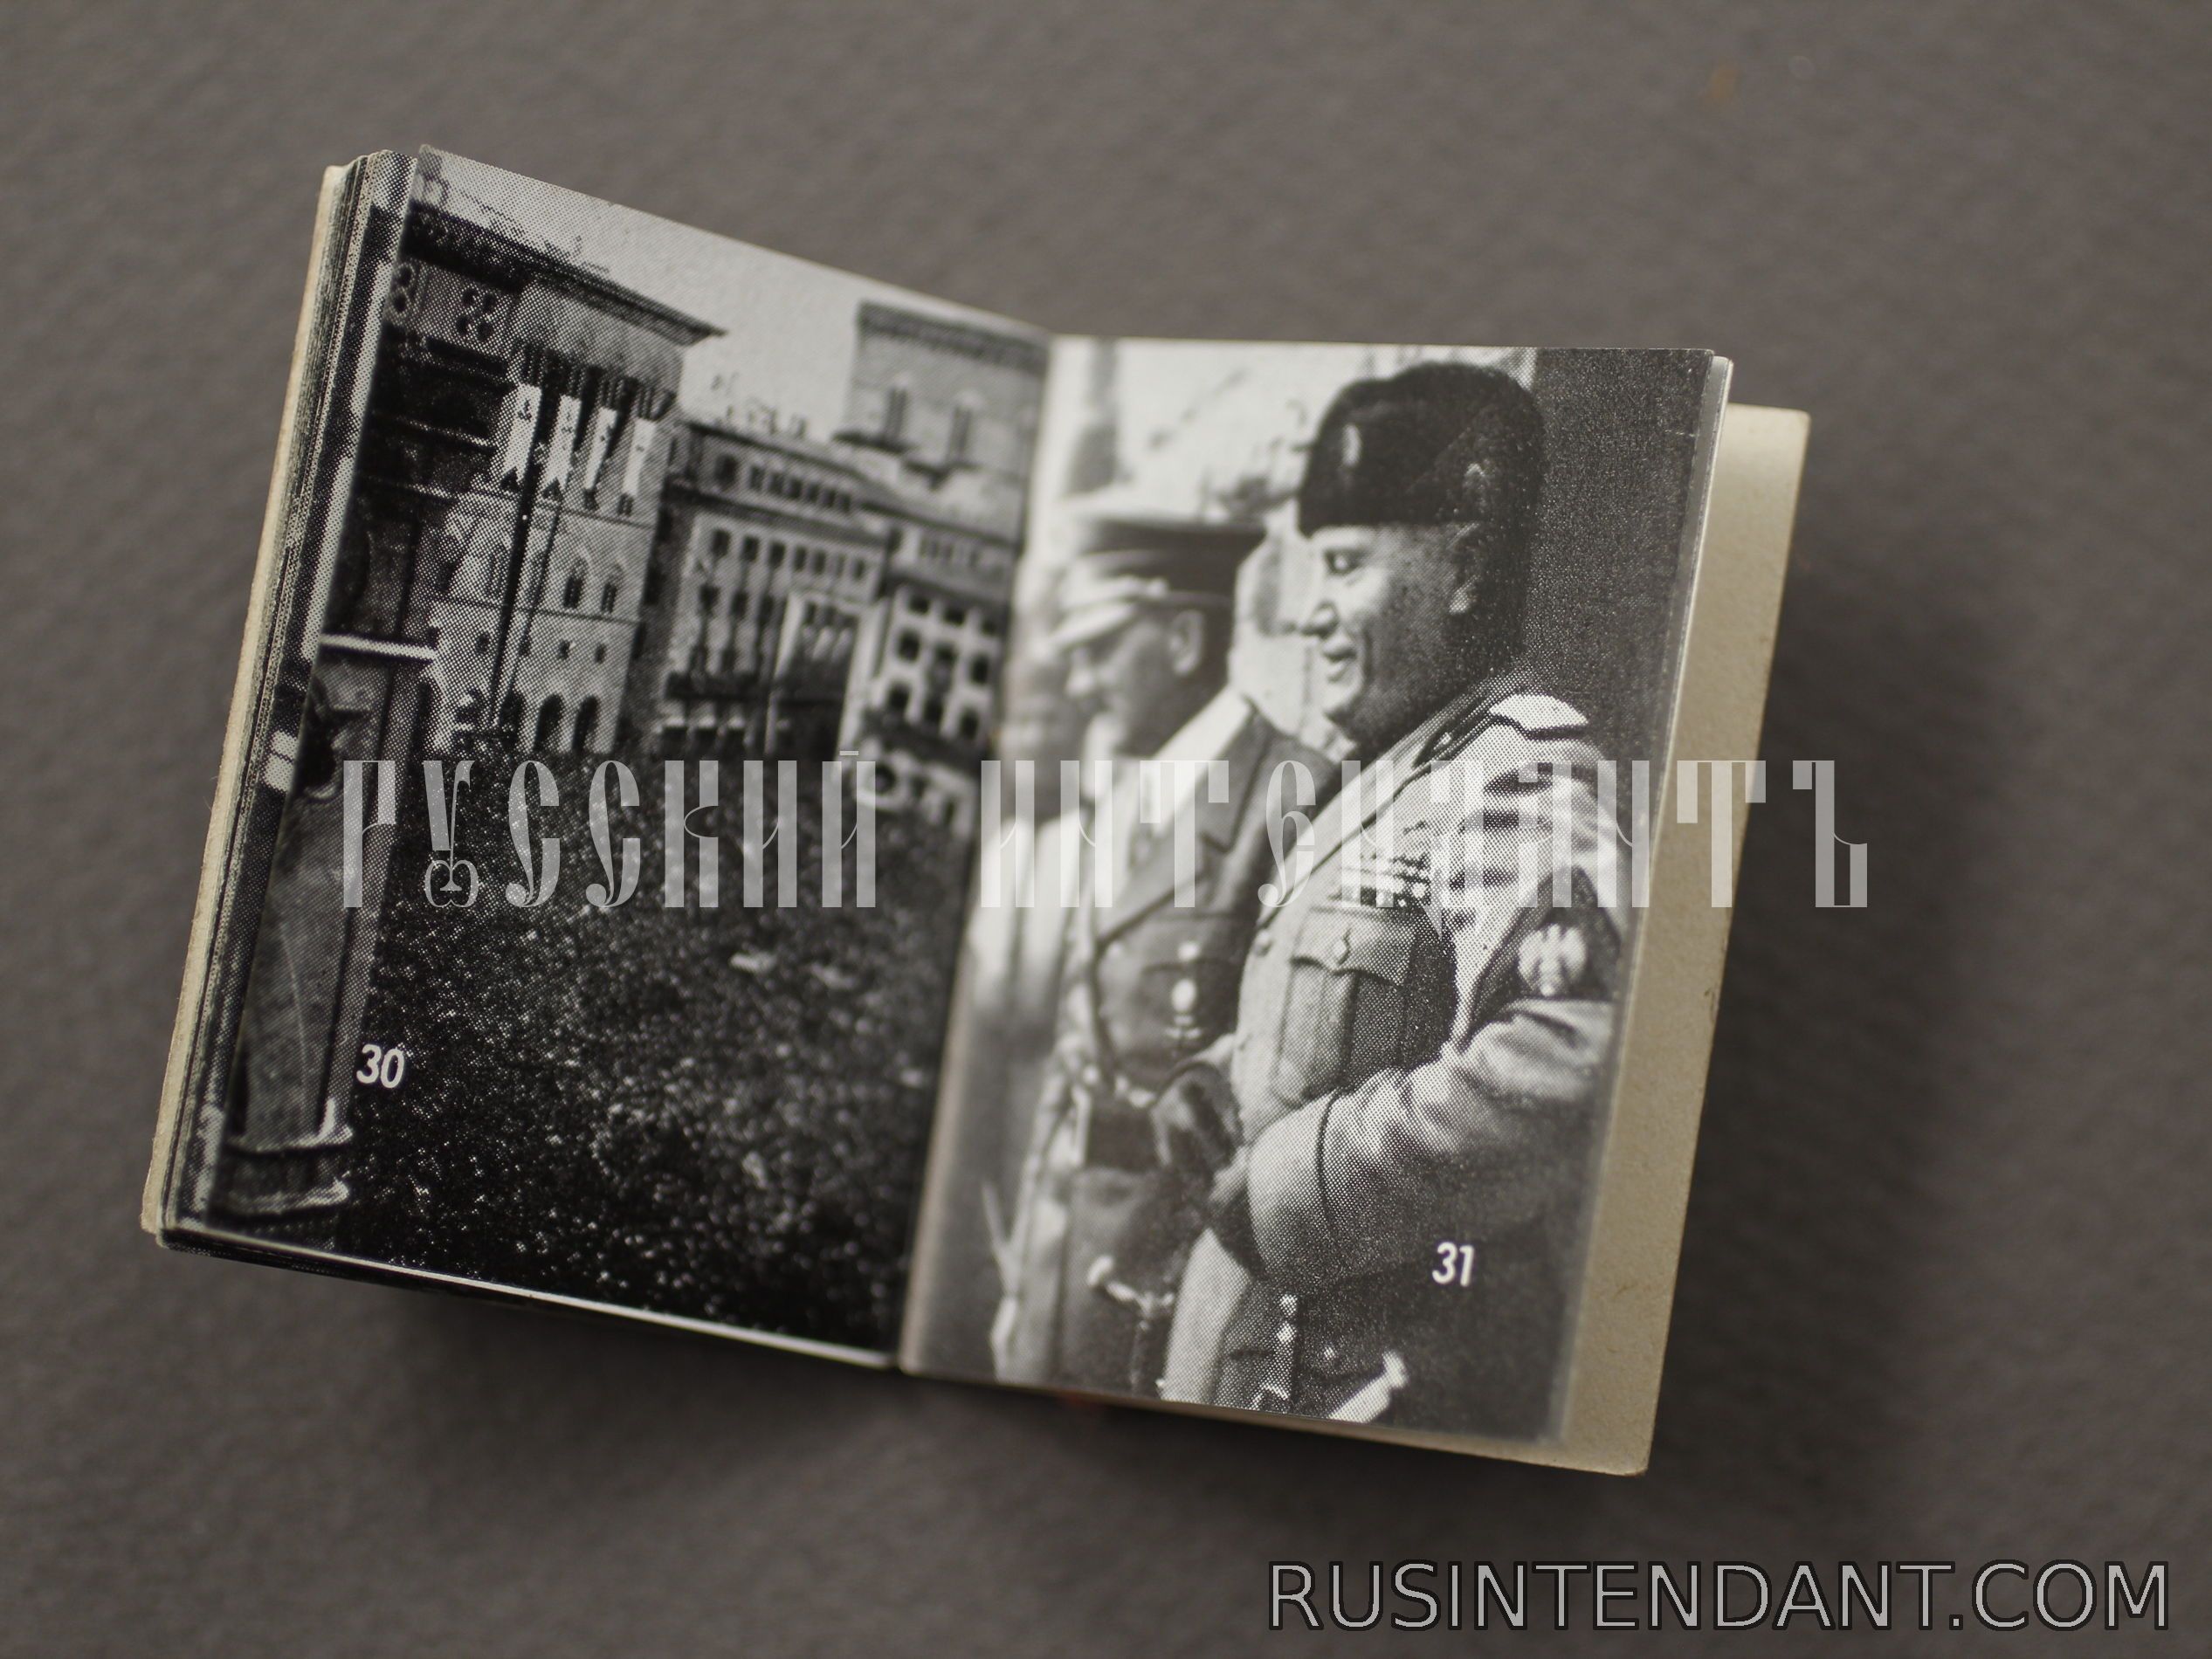 Фото 3: Журнал "Фюрер и Муссолини" 